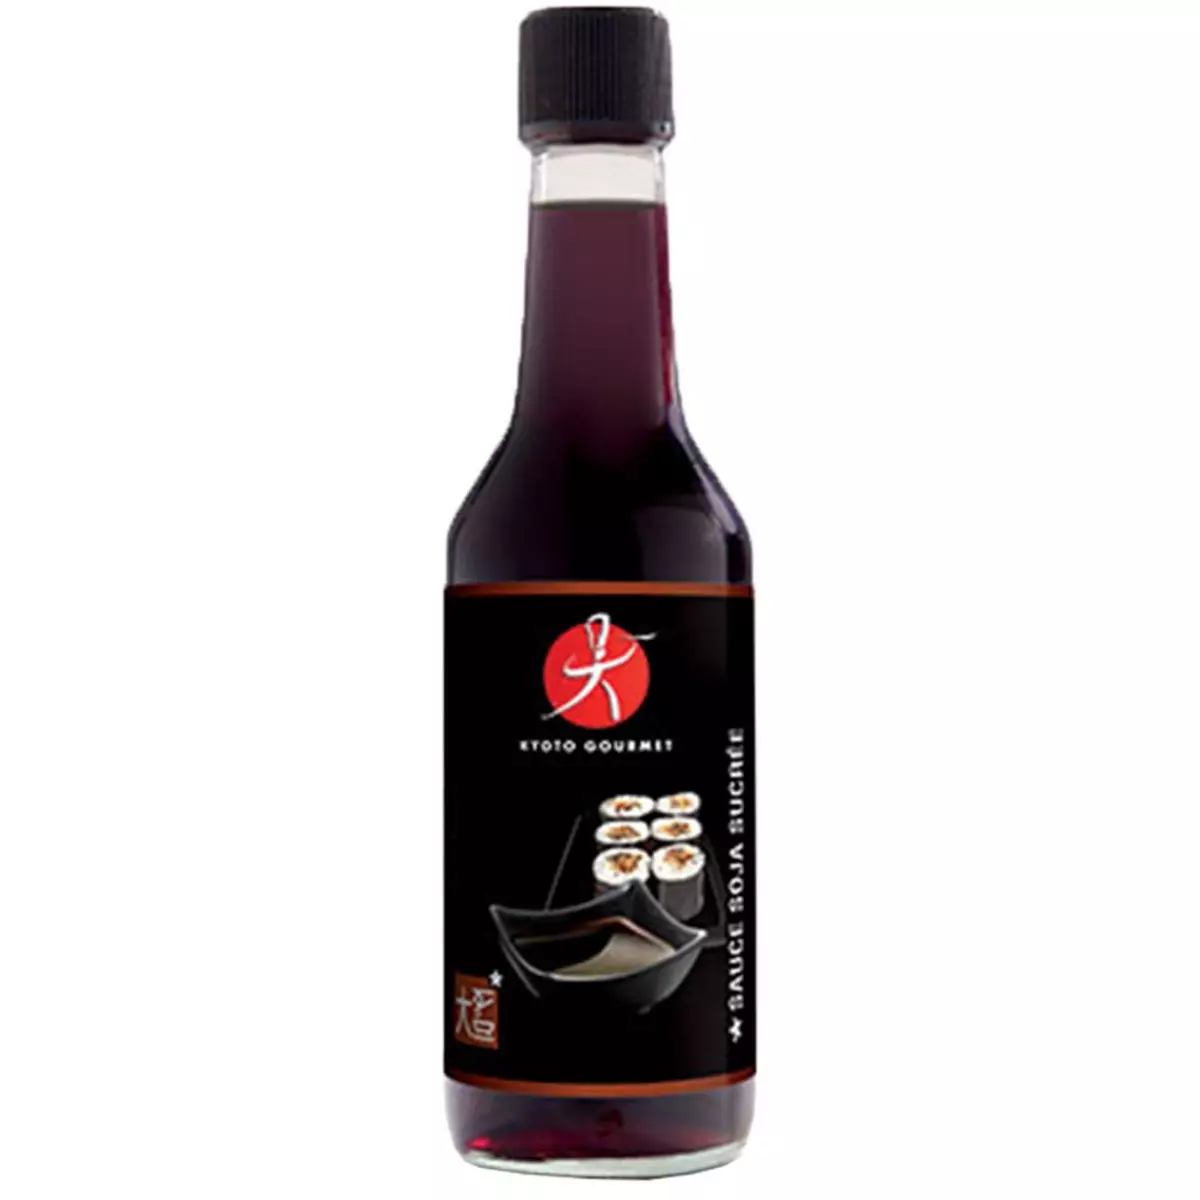 SUSHI SHOP Sauce soja sucrée Kyotog gourmet 150g